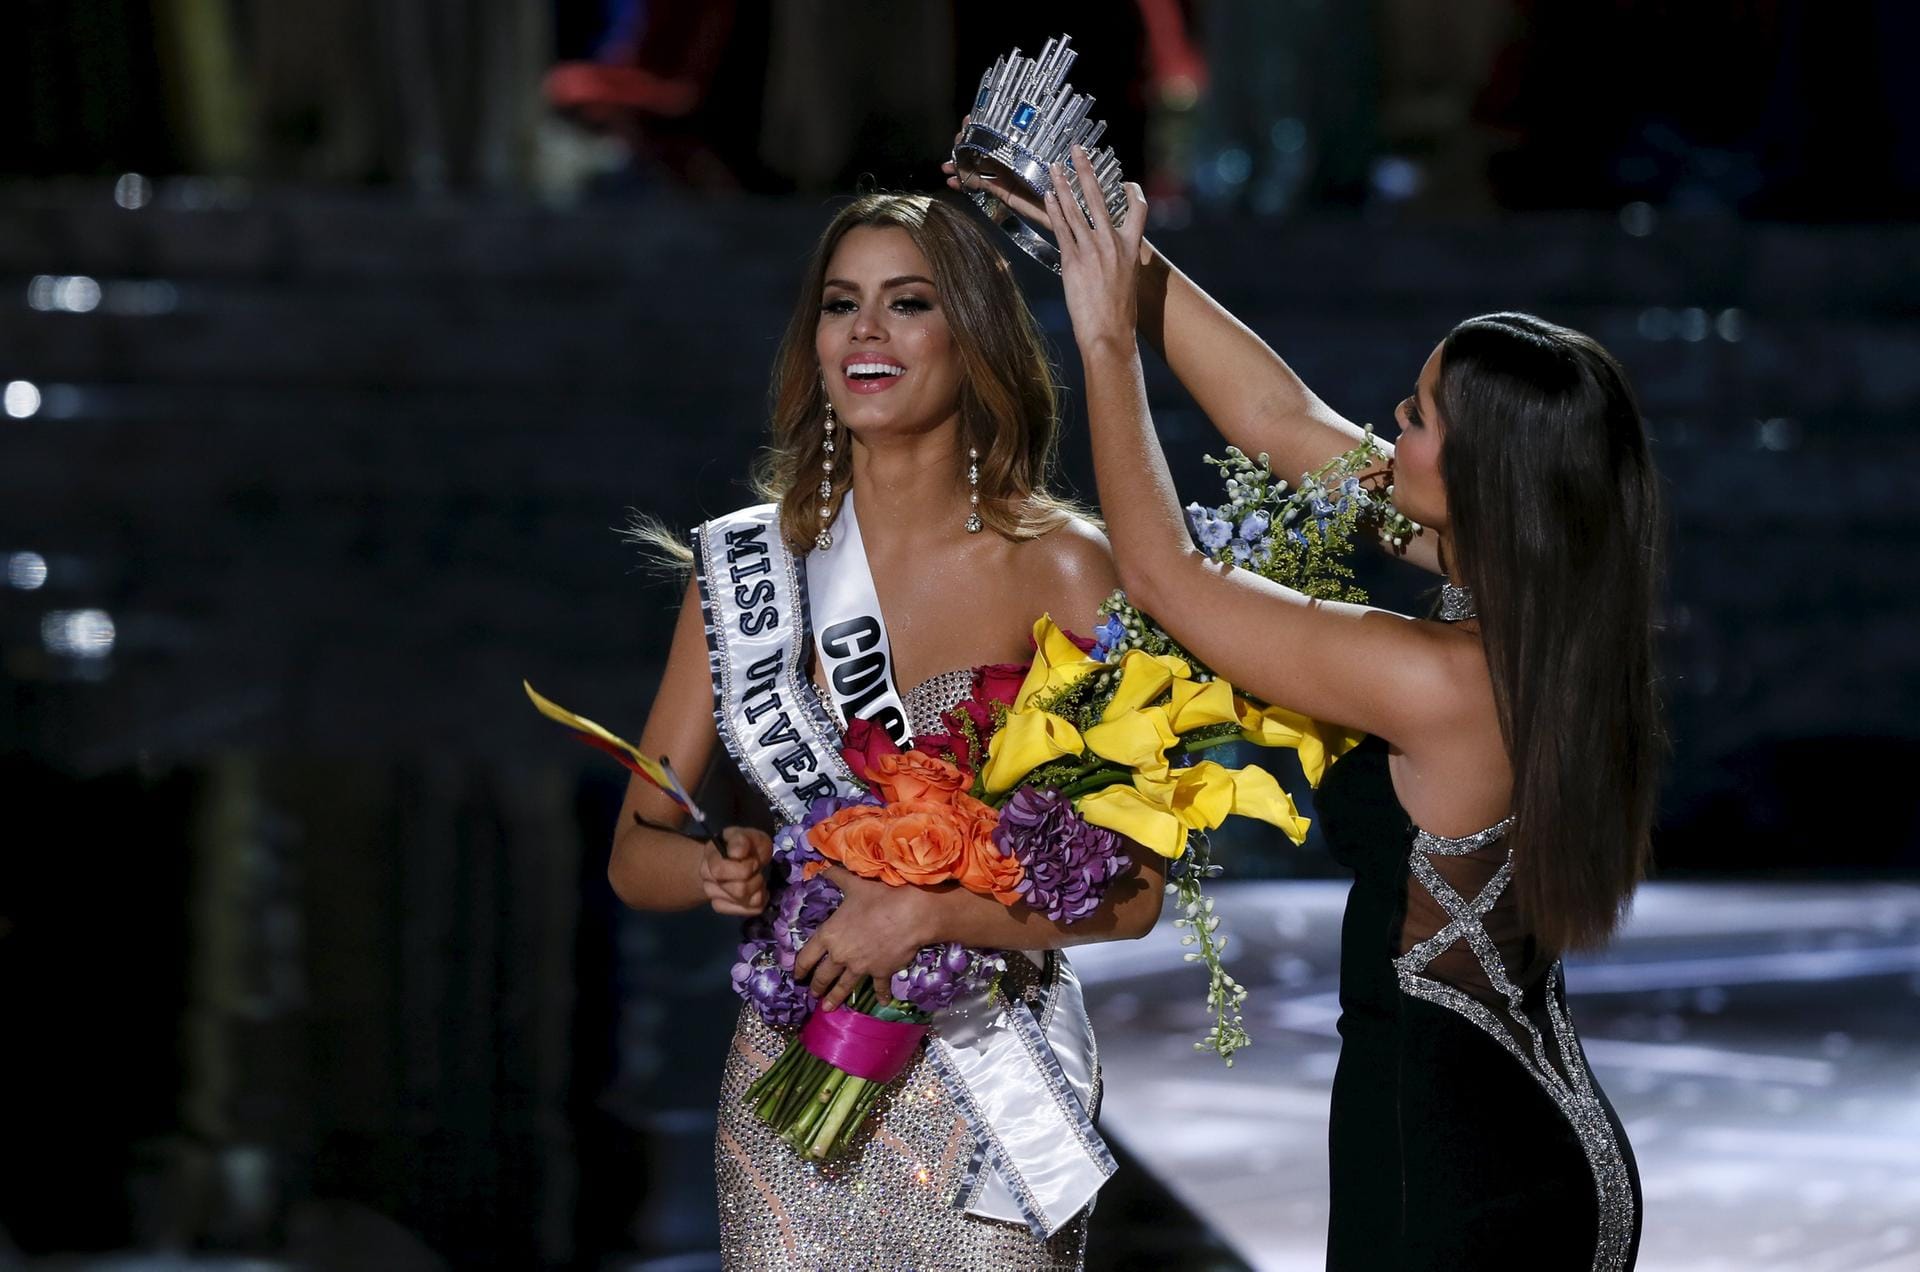 Mit Tränen in den Augen: Miss Kolumbien Ariadna Gutierrez Arevalo wird die Krone der Miss Universe von ihrer Vorgängerin Paula Vega aufgesetzt. Ein fataler Fehler, wie sich gleich darauf herausstellte.